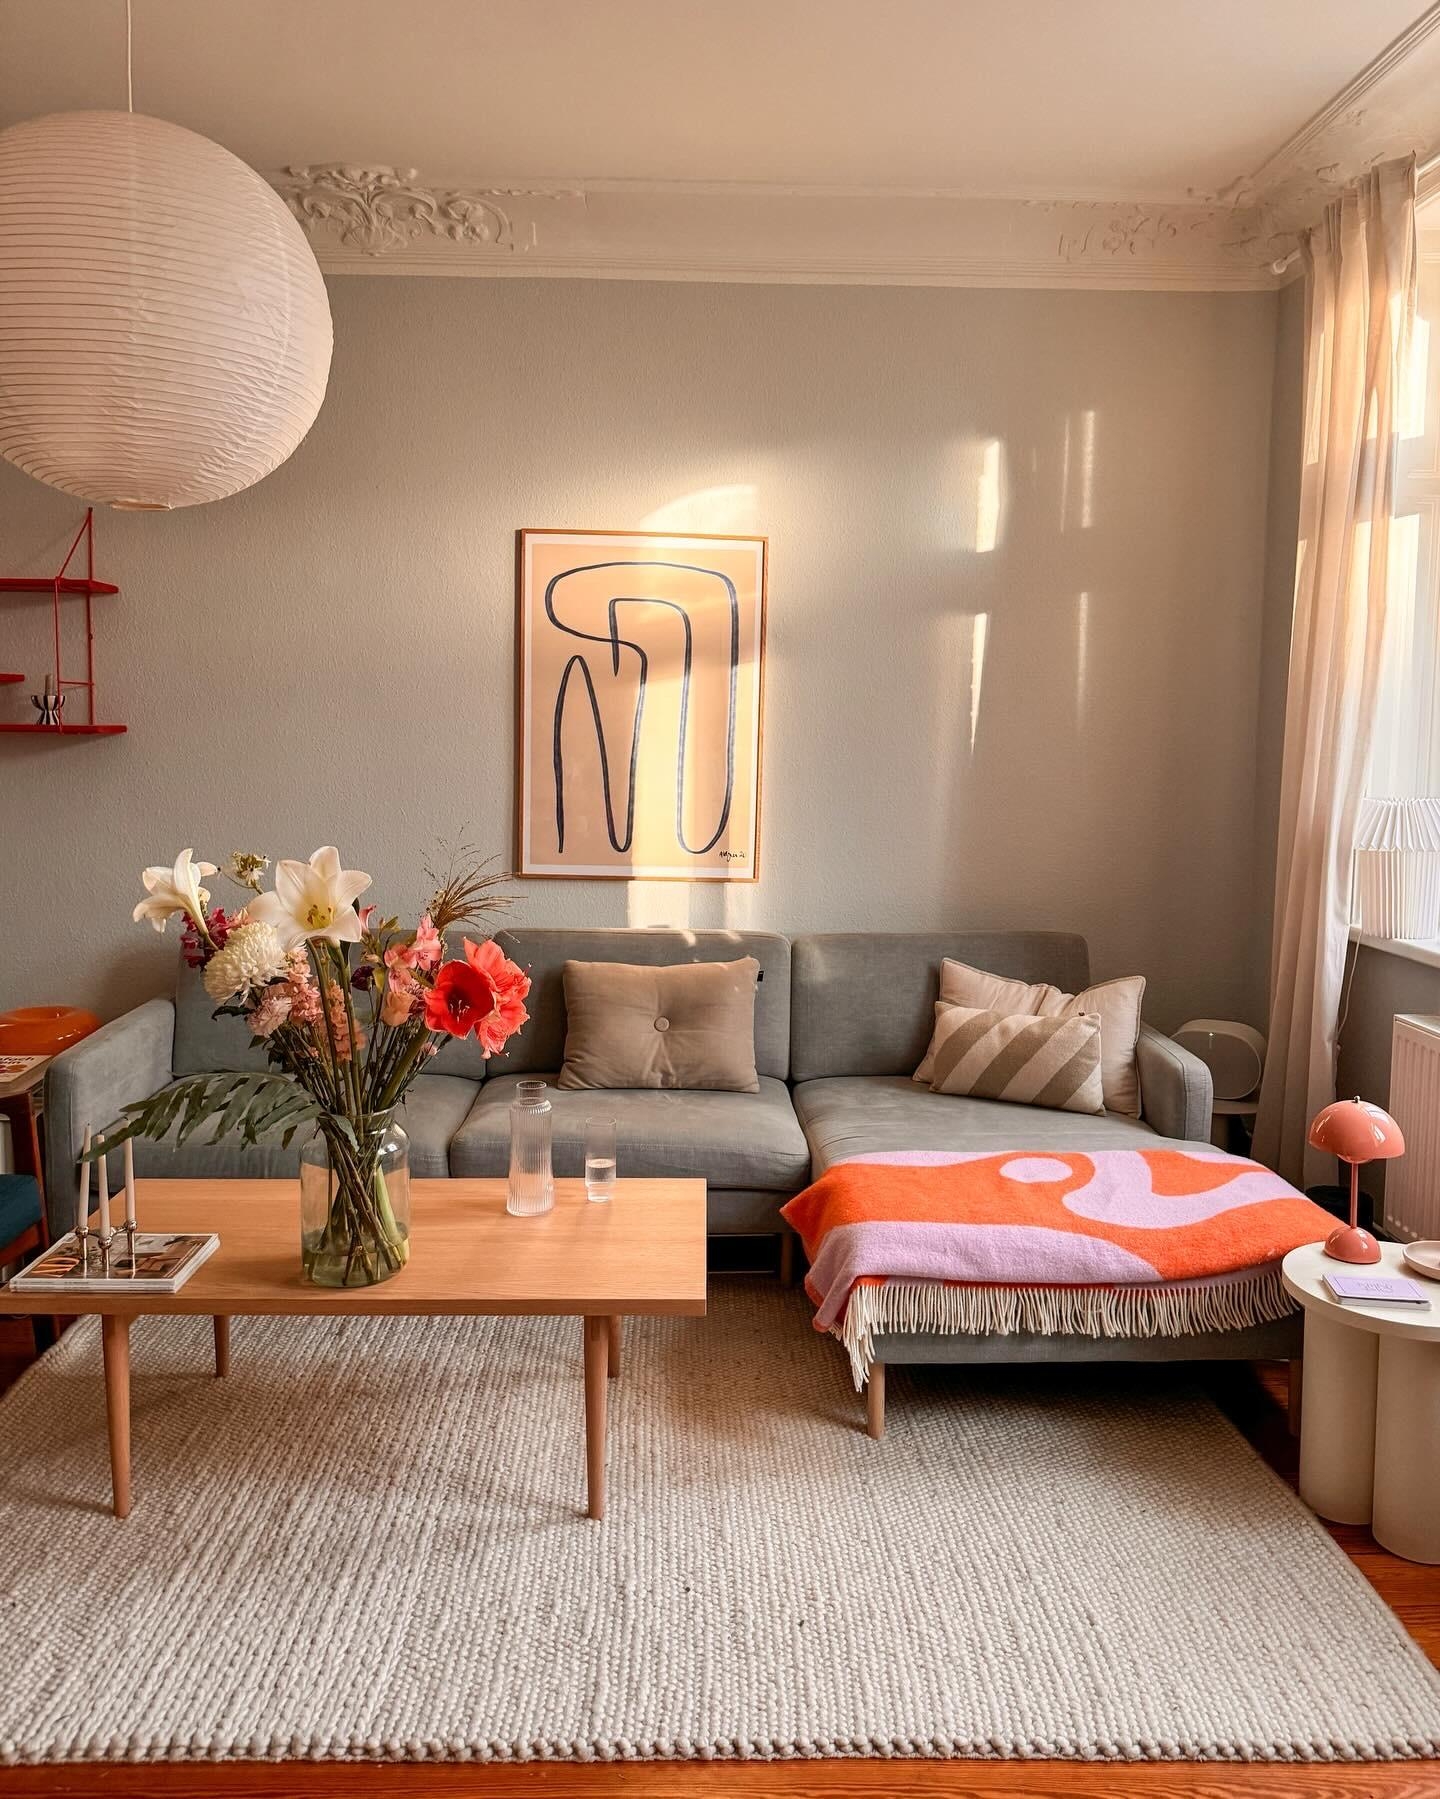 Lieb unsere Couch💗

#livingroom #livingroomdecor #interior #wohnzimmer #wohnzimmerinspo 